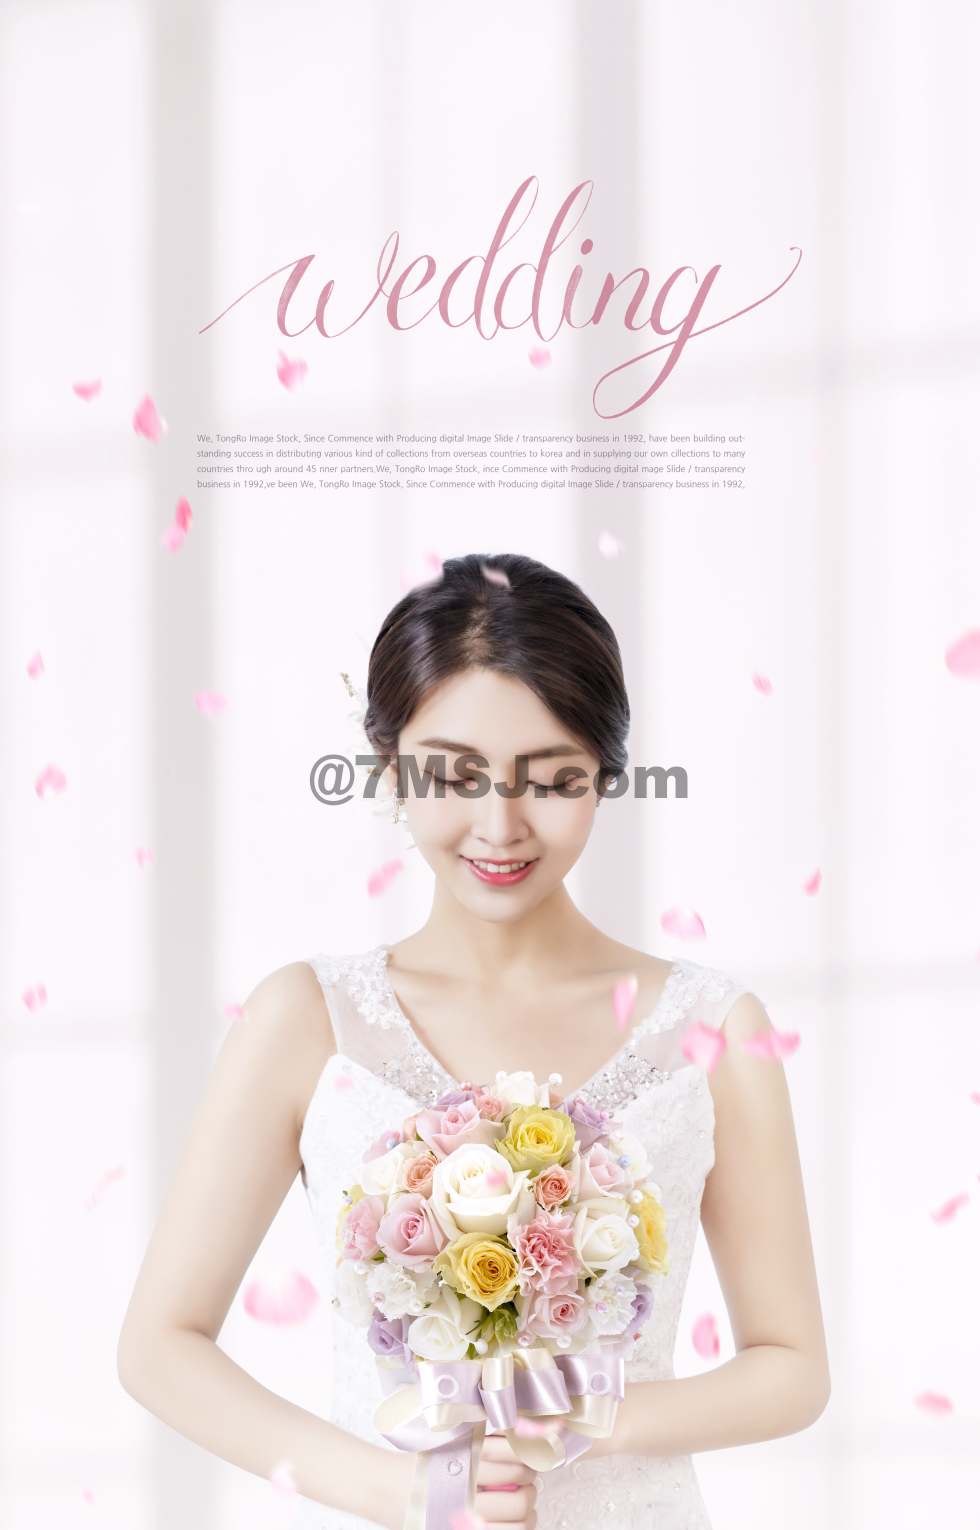 漂亮新娘婚纱照婚纱摄影宣传海报 广告设计 七米网 7msj Com